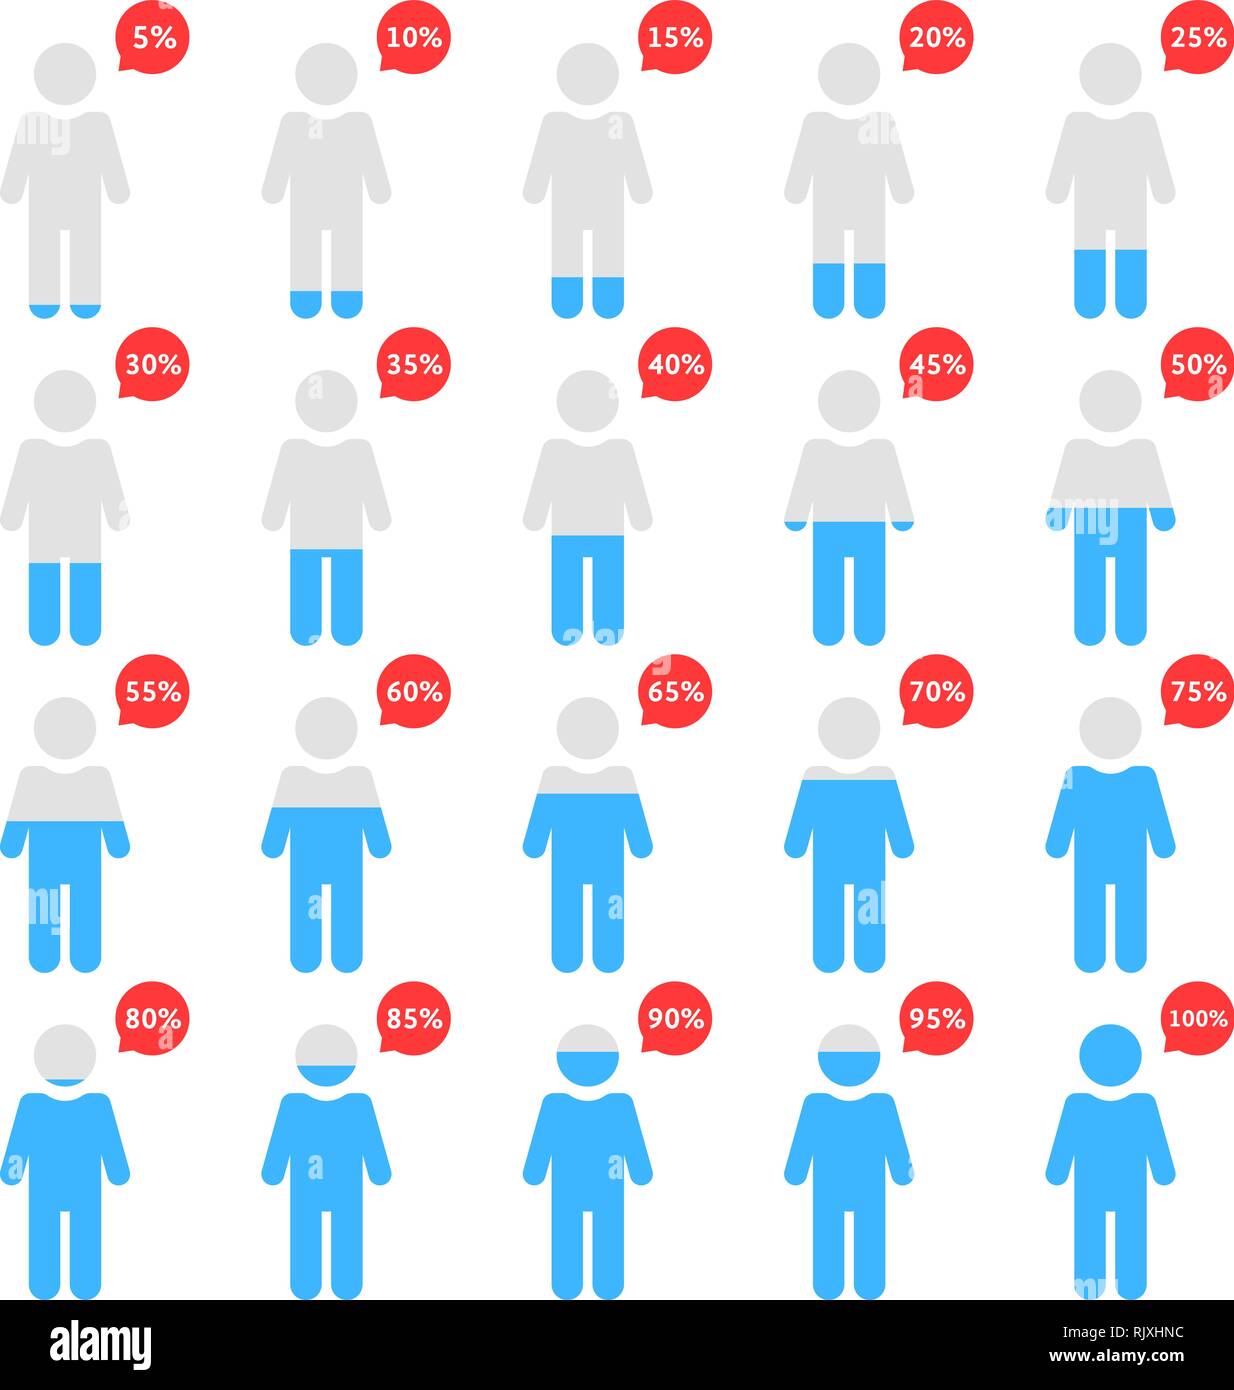 Prozentsatz Menschen wie menschliche Infografik Stock Vektor